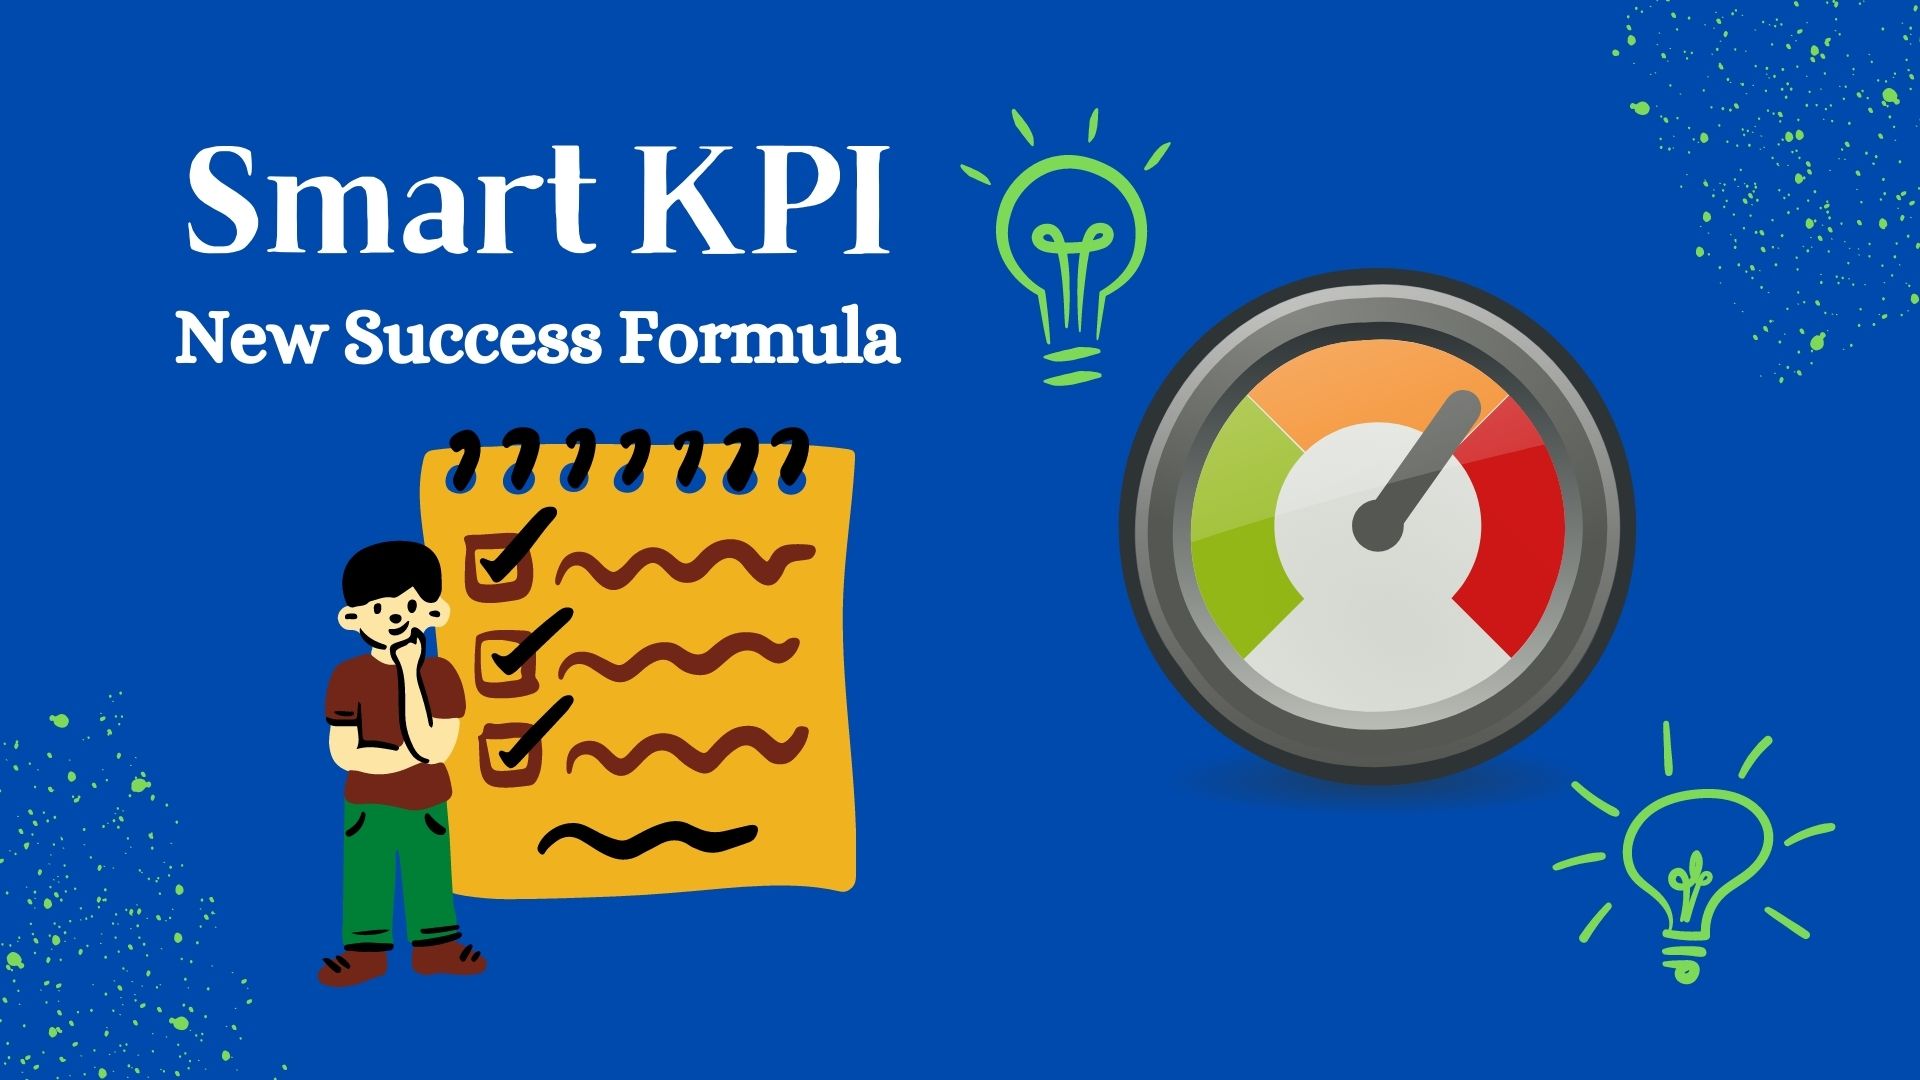 Smart KPI